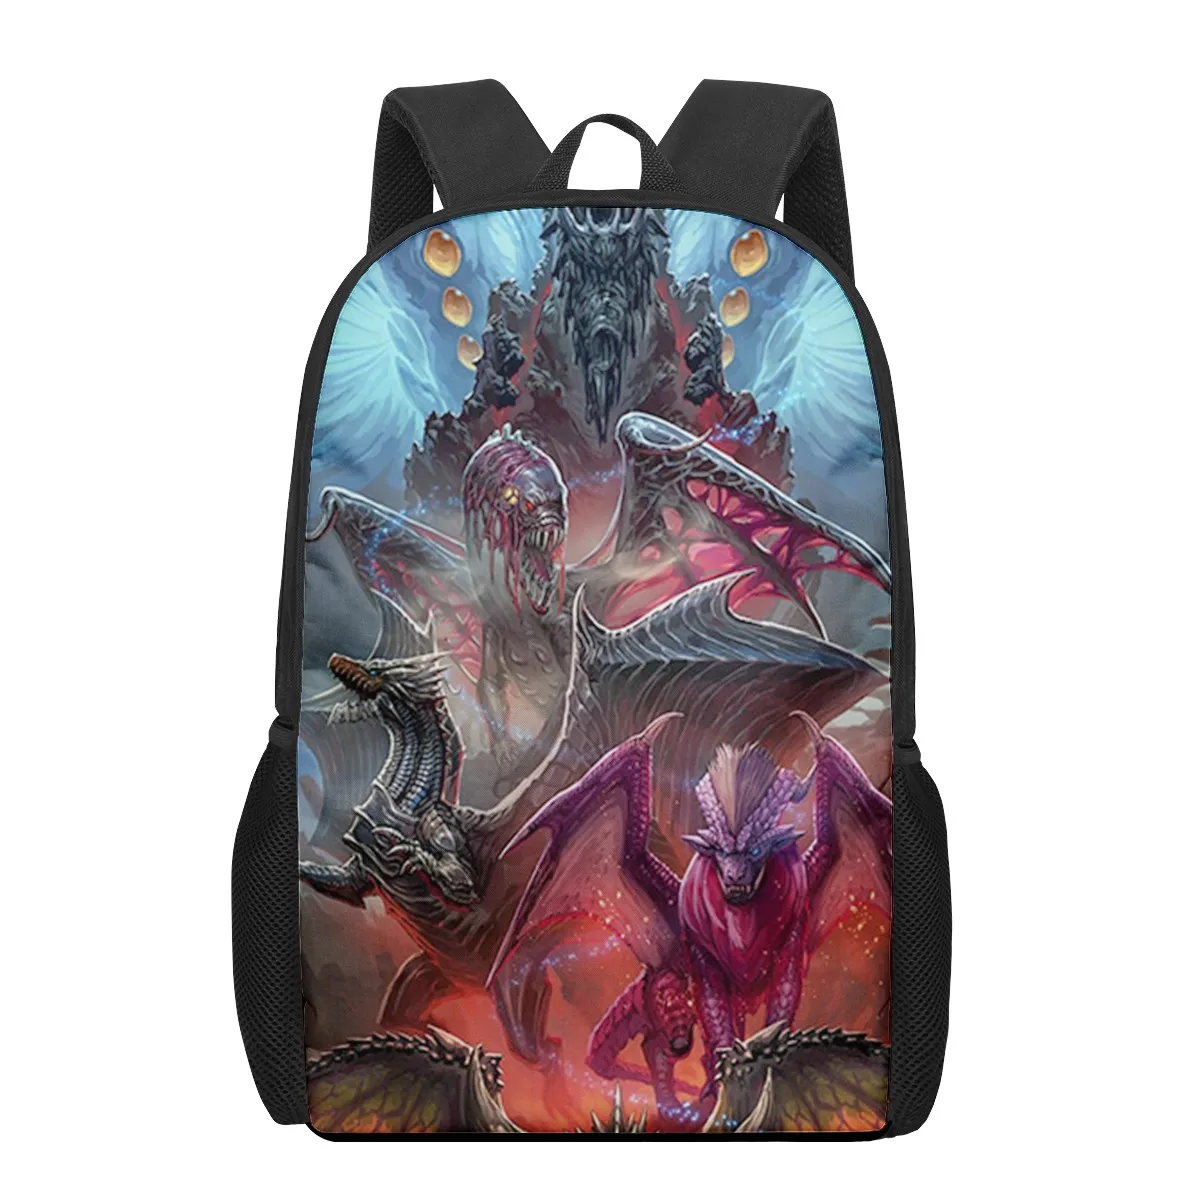 Monster Hunter World: Iceborne 3D Pattern School Bag for Children Girls Boys Casual Book Bags Kids Backpack Boys Girls Schoolbag